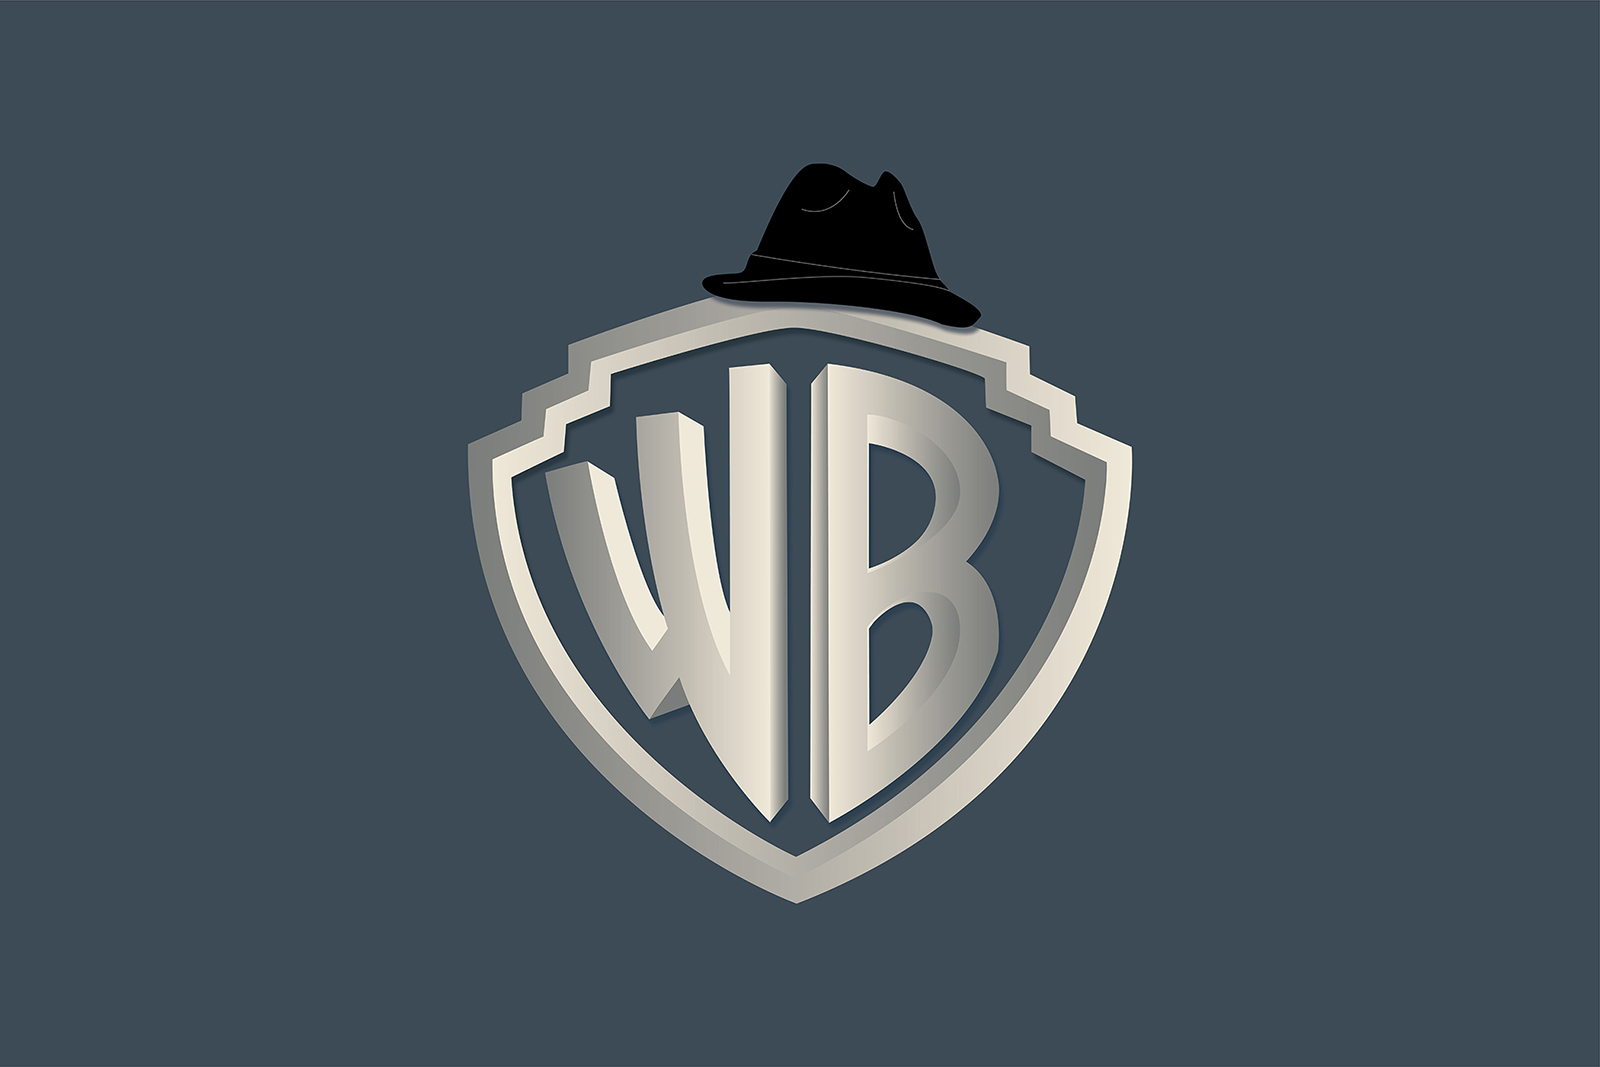 Diseño del escudo Warner Bros con el sombrero de Rocky sobre él.